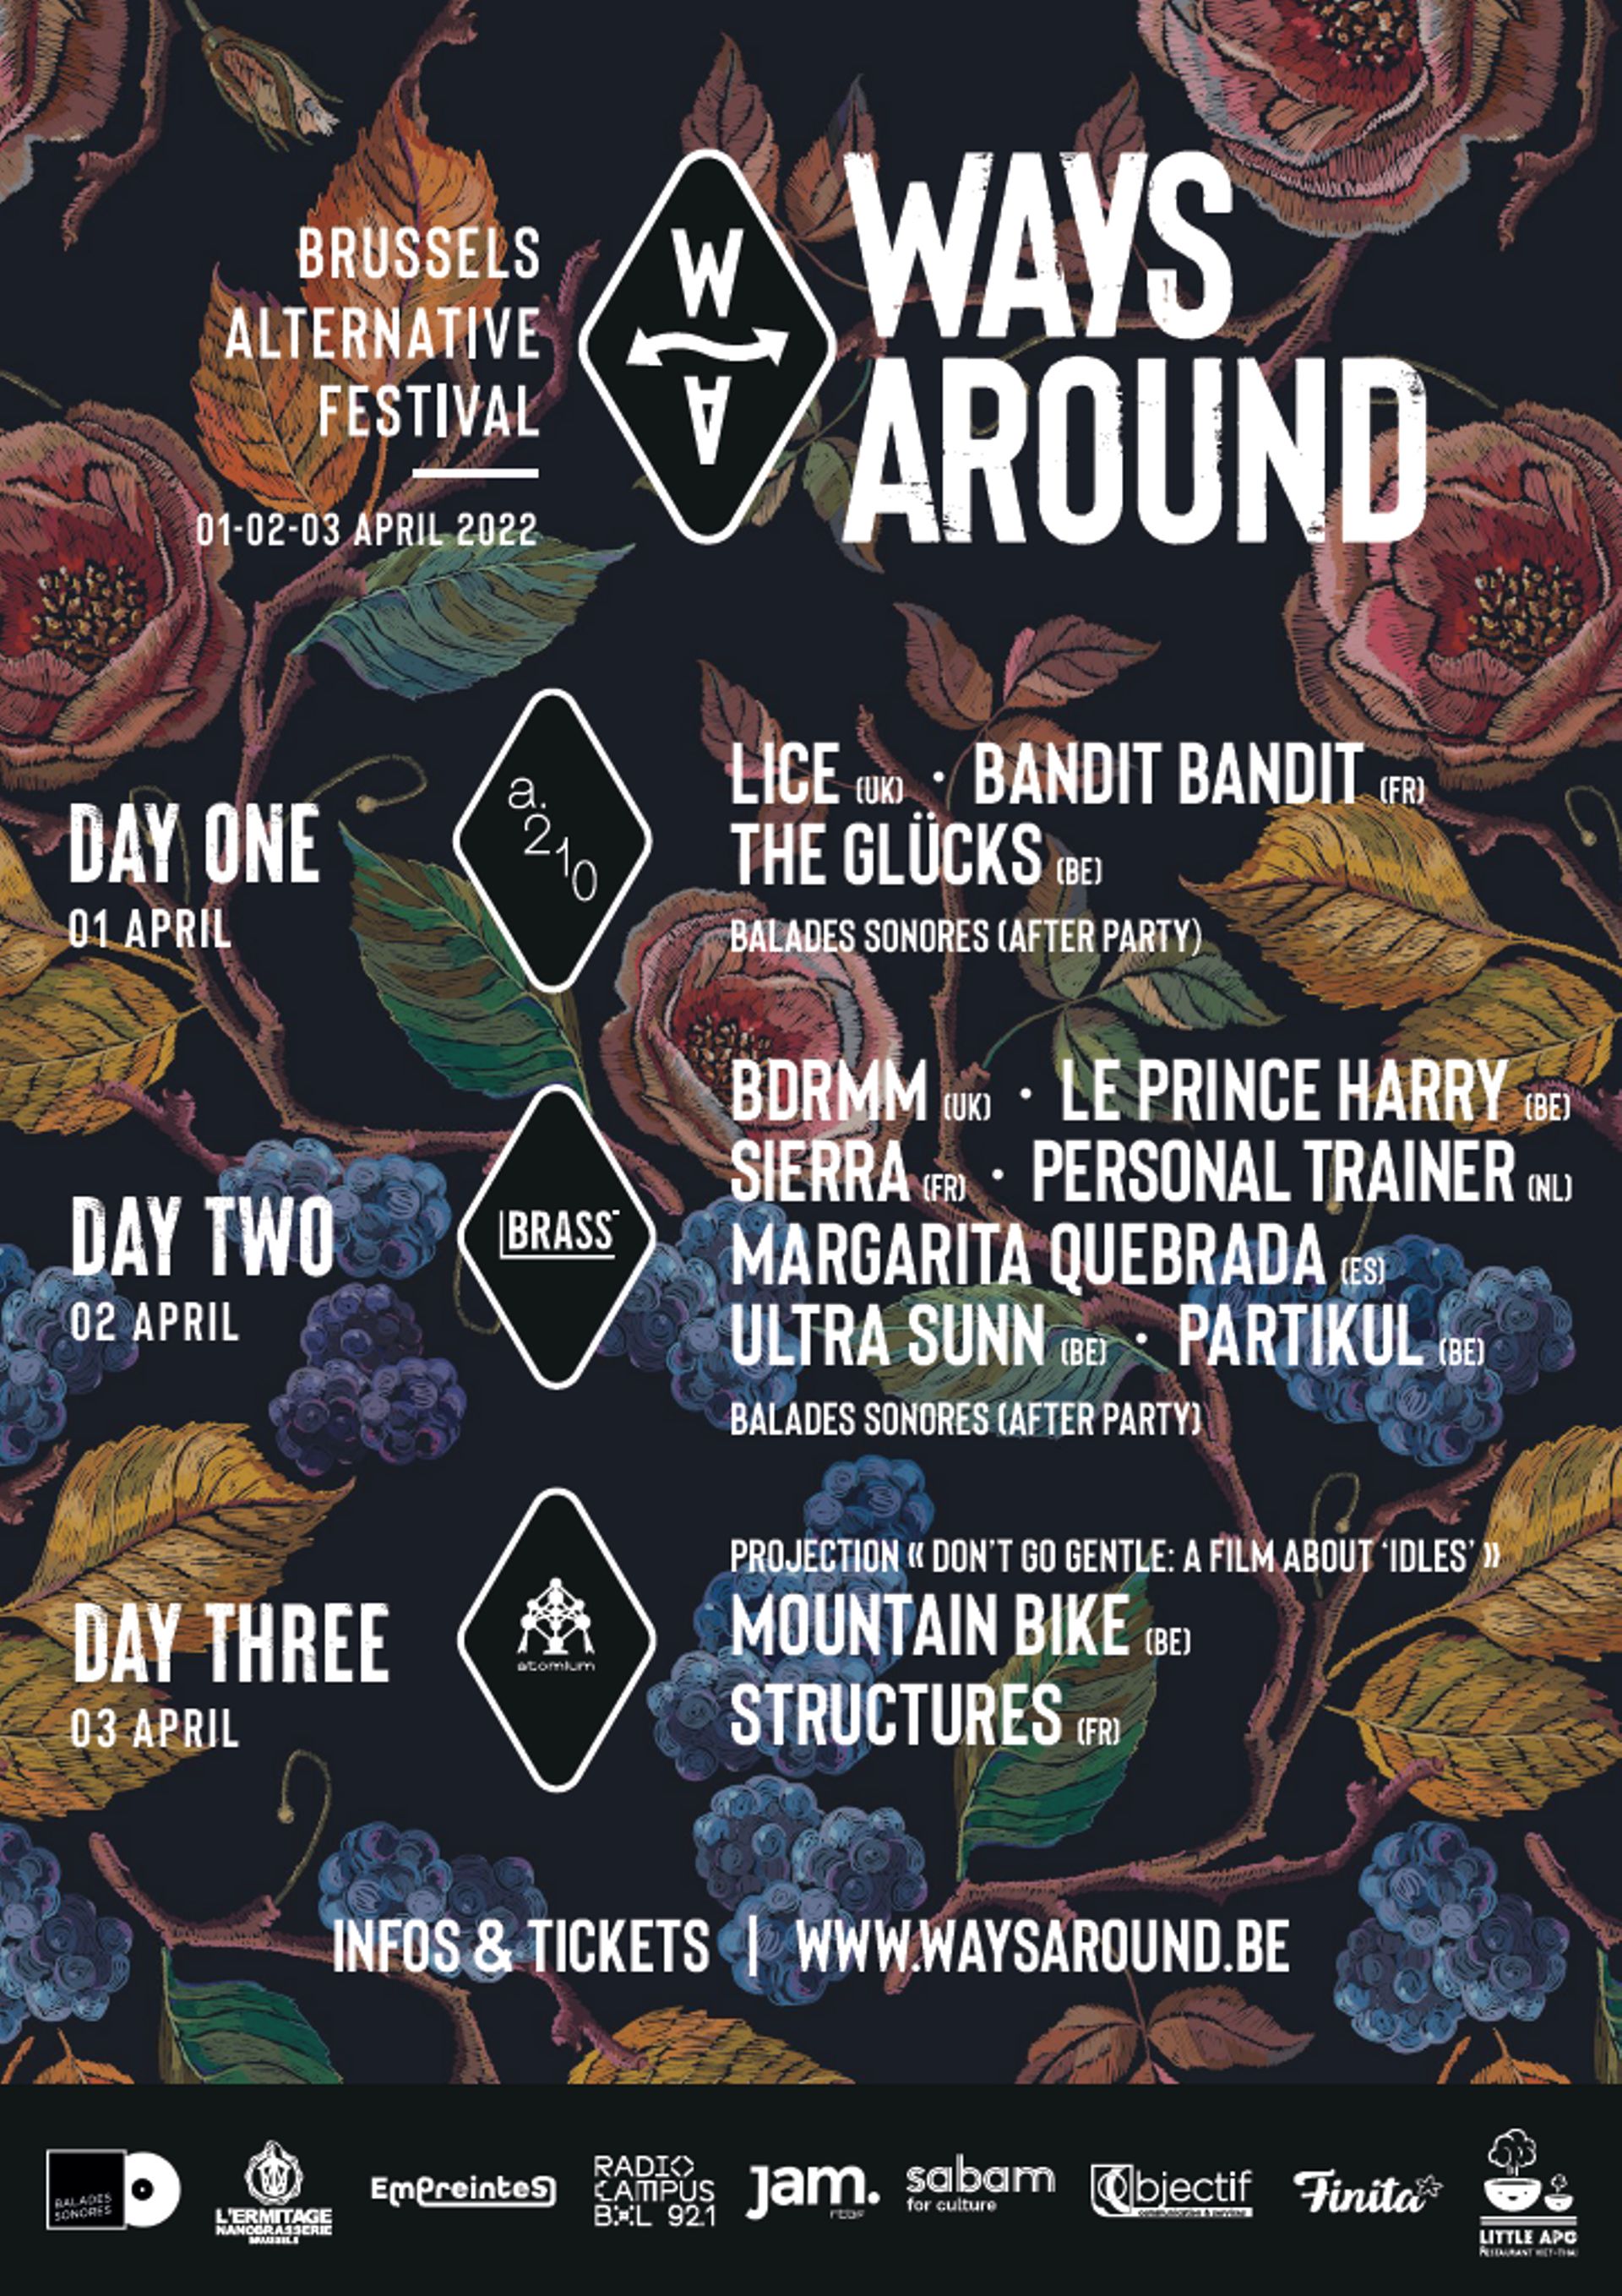 Le line up complet pour cette première édition du Ways Around Festival. Rendez-vous du 1er au 3 avril.